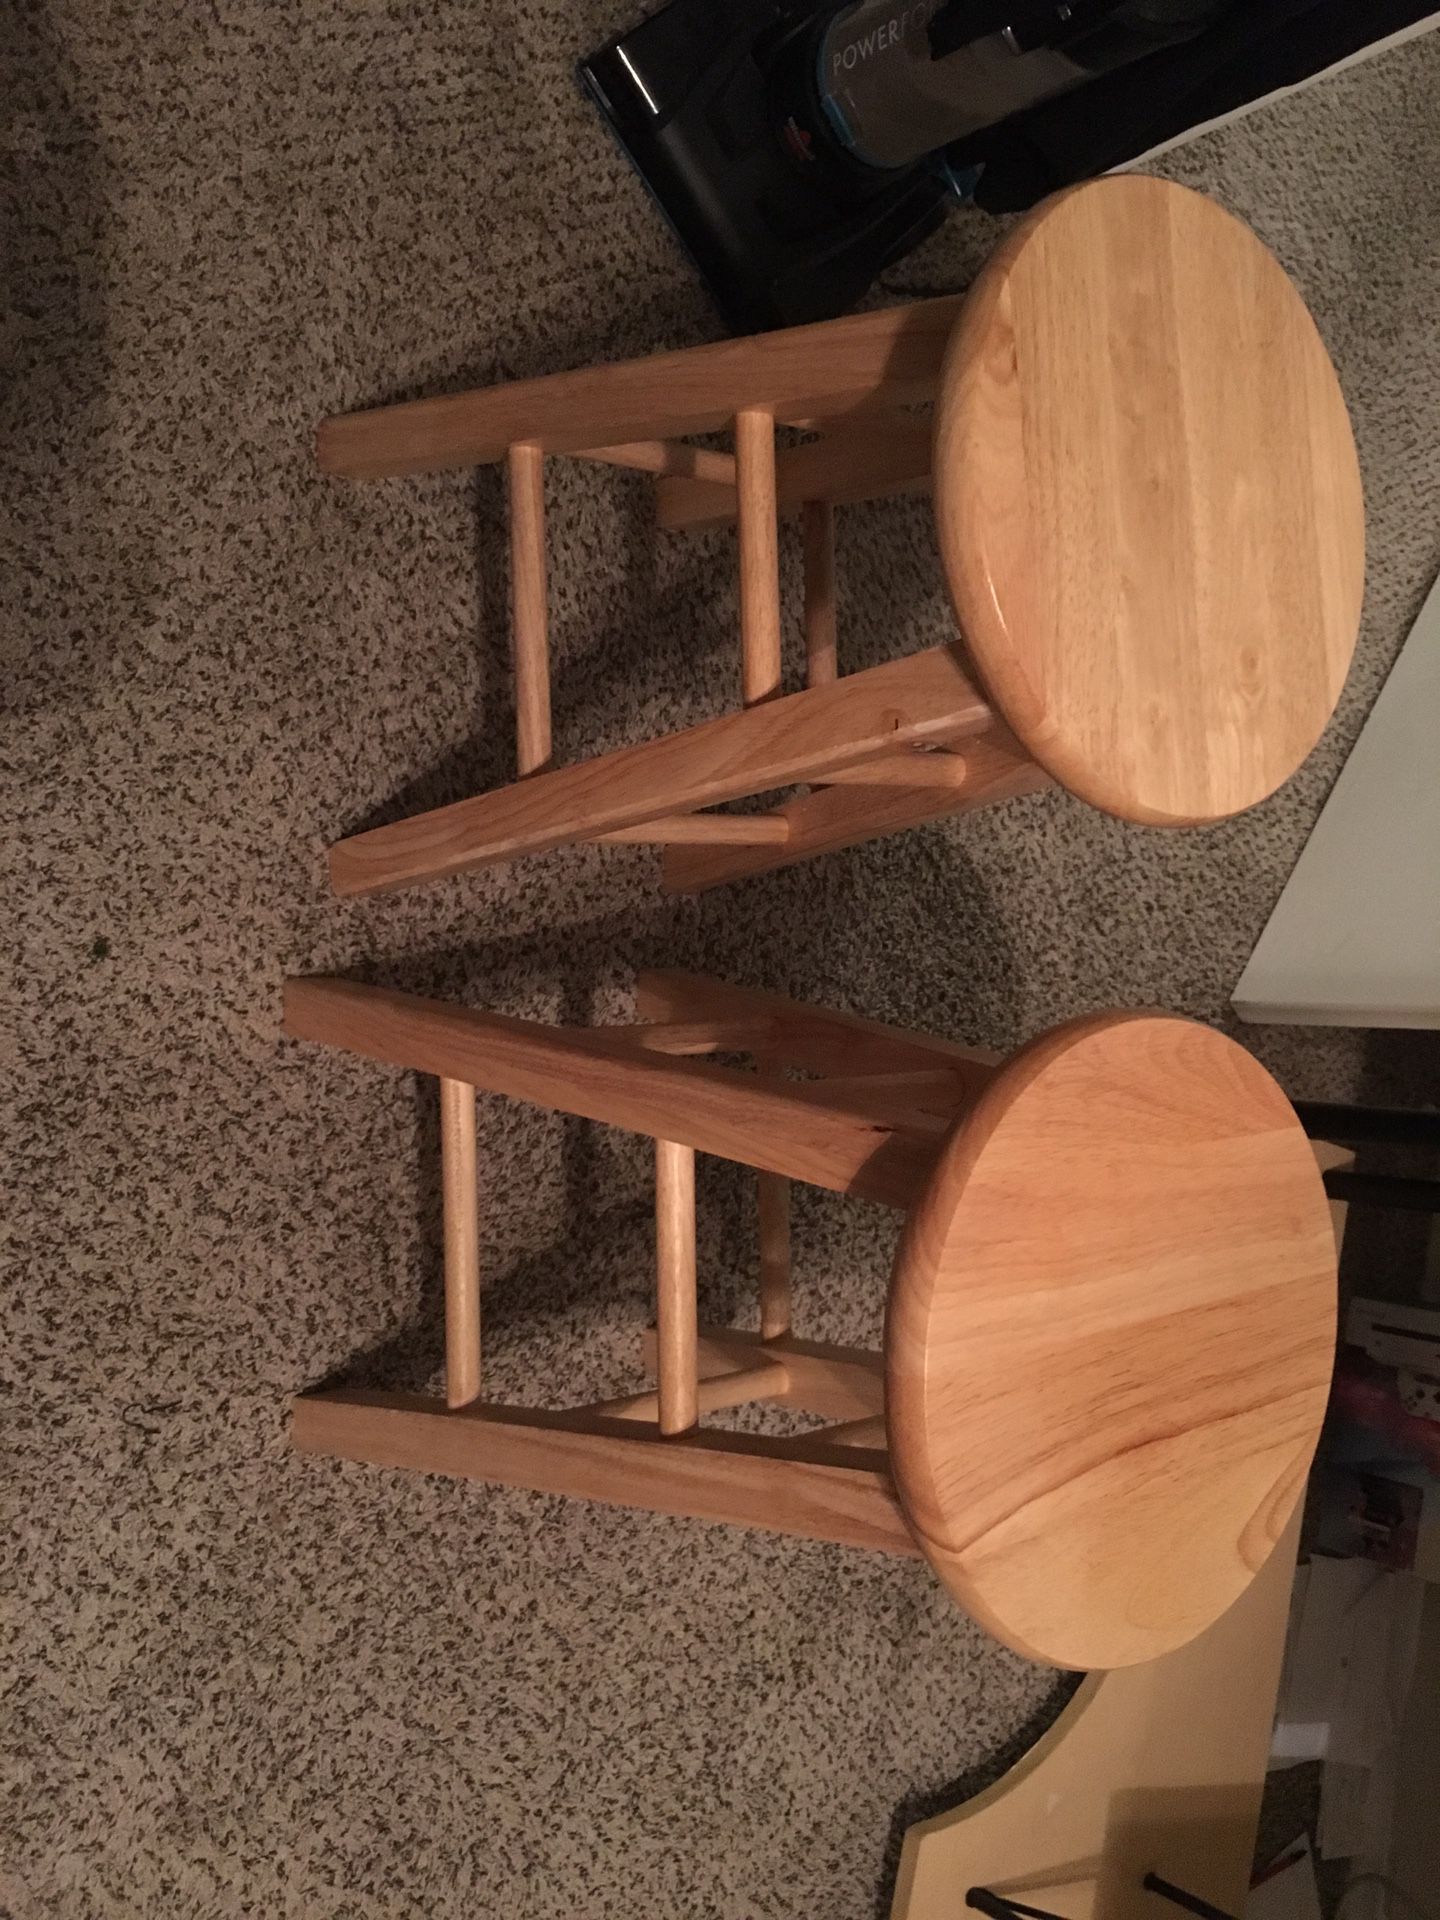 24” Barstool Chair Stools Barstools